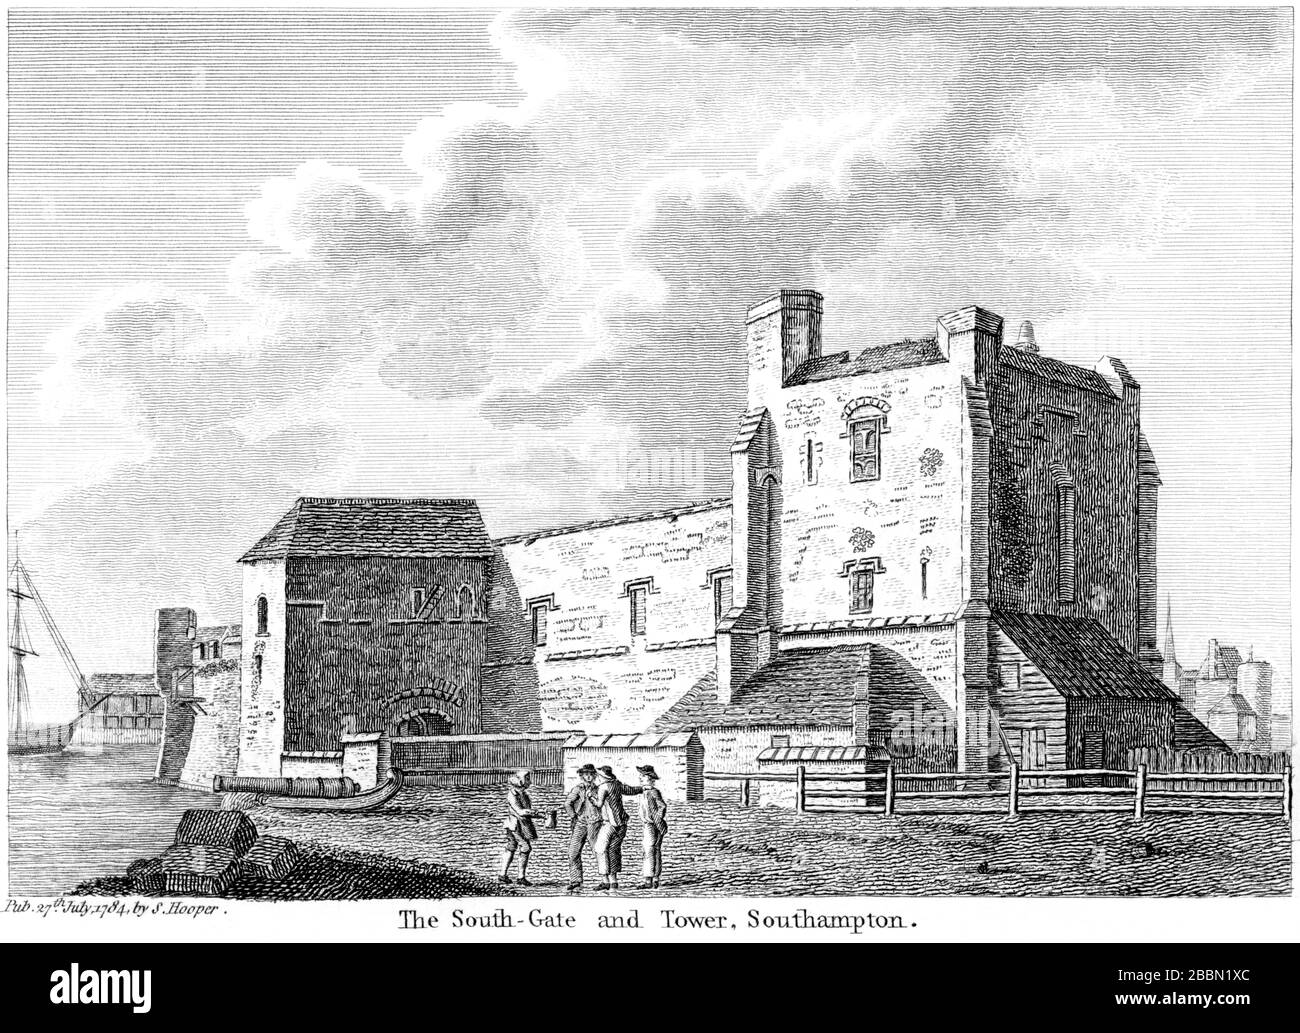 Southampton, eine Gravur des South-Gate und Tower, von einem Buch aus, das um das Jahr 1786 veröffentlicht wurde, mit hoher Auflösung gescannt. Ich glaube, dass das Urheberrecht frei ist. Stockfoto